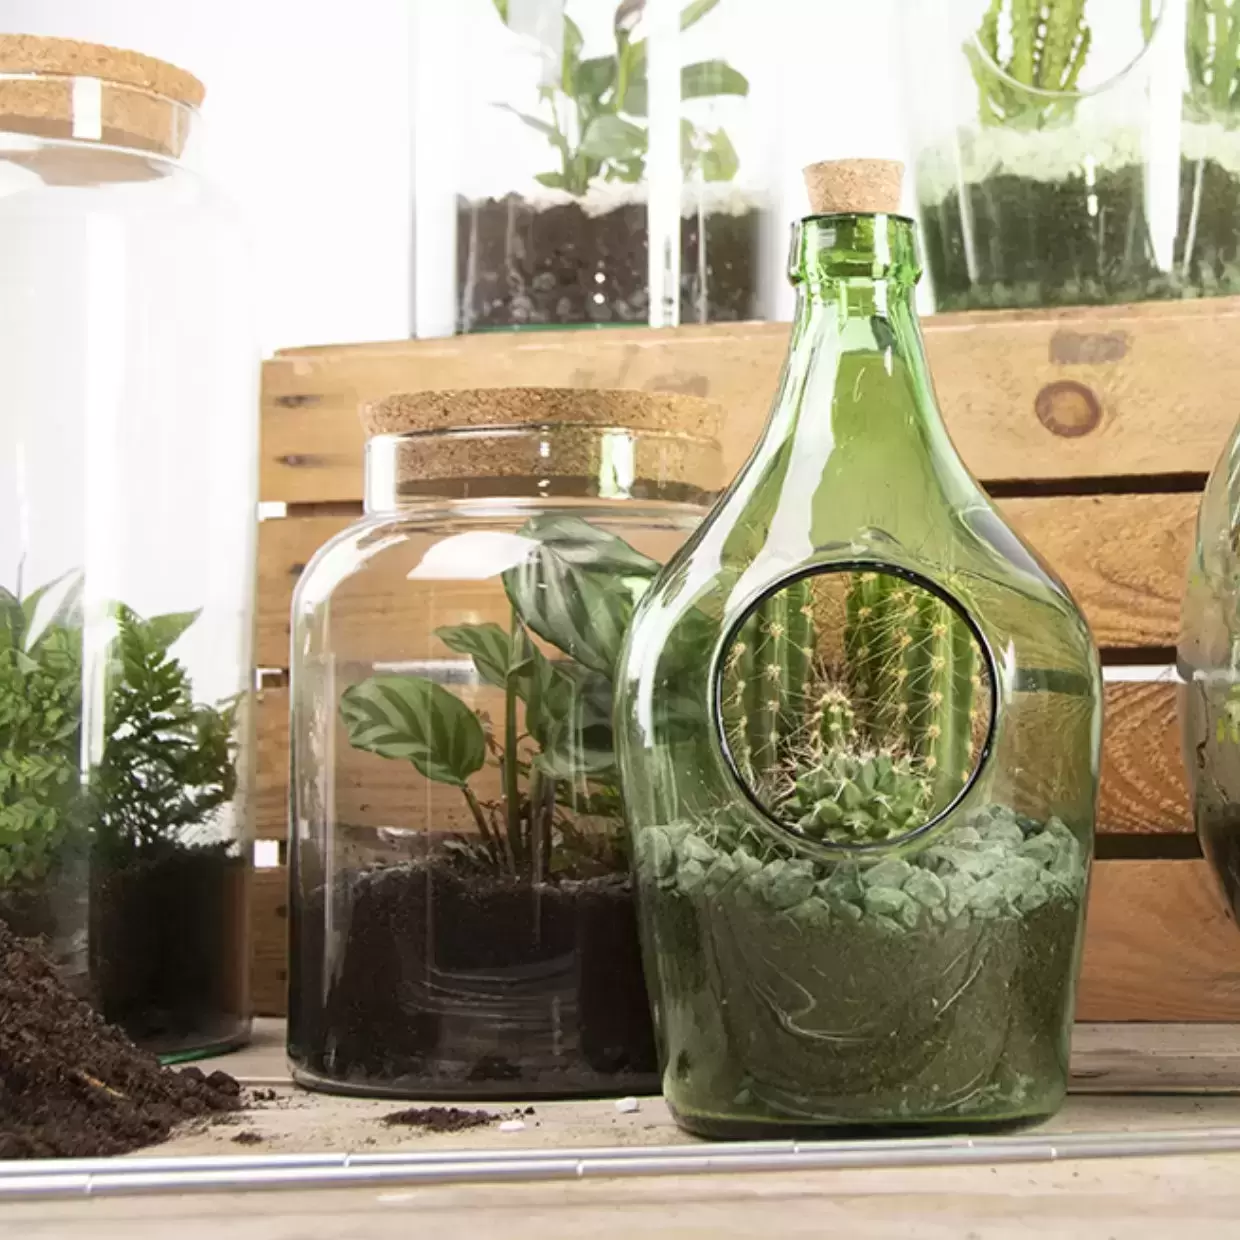 Terrarium Bottle w/Tools, Glass, Green - Large - Esschert Design USA